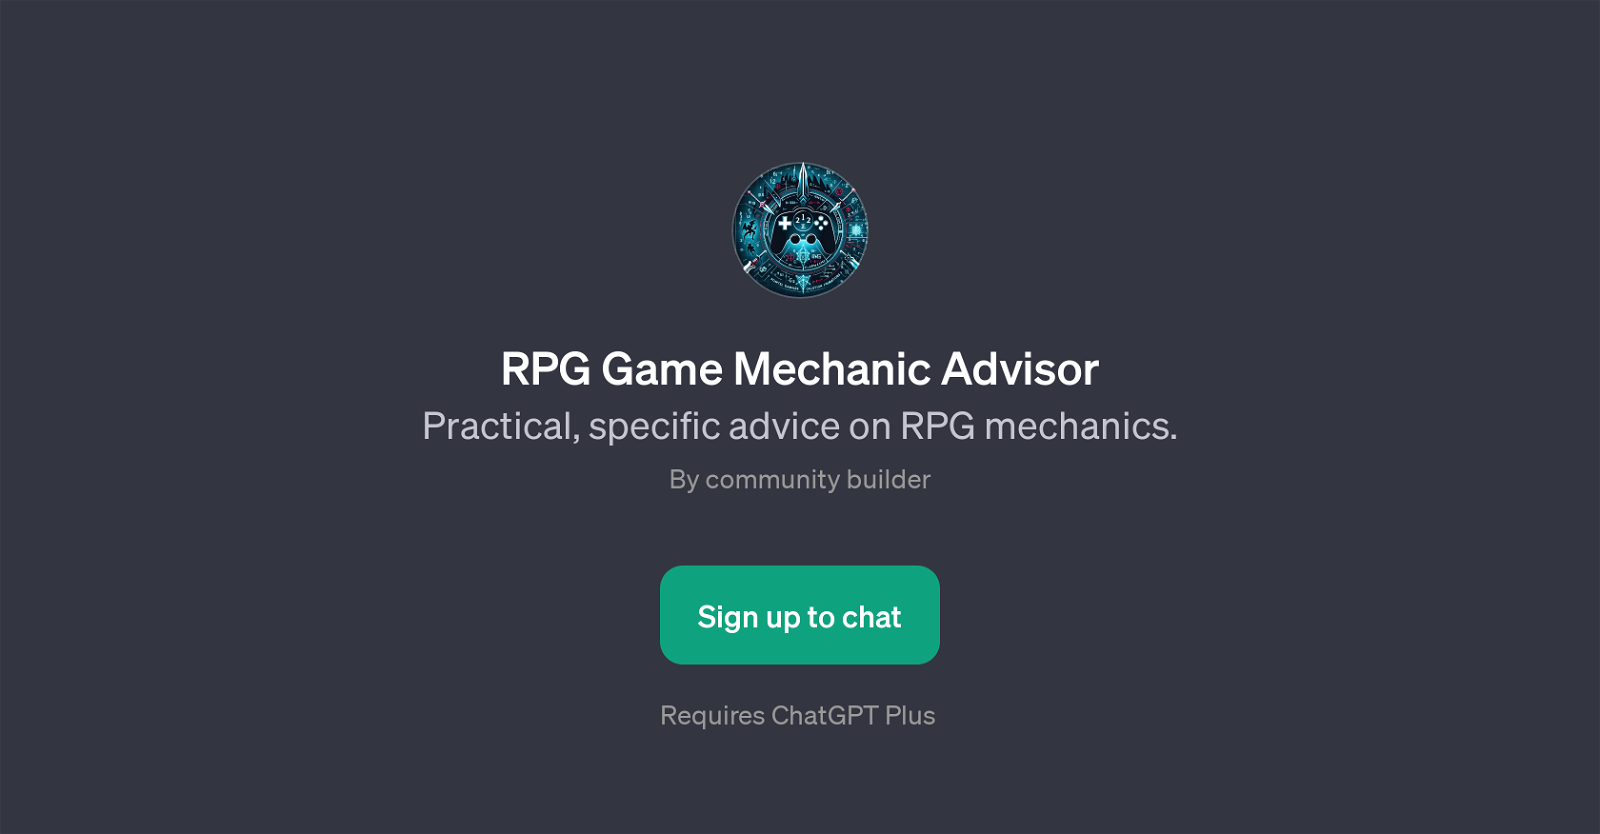 RPG Game Mechanic Advisor website